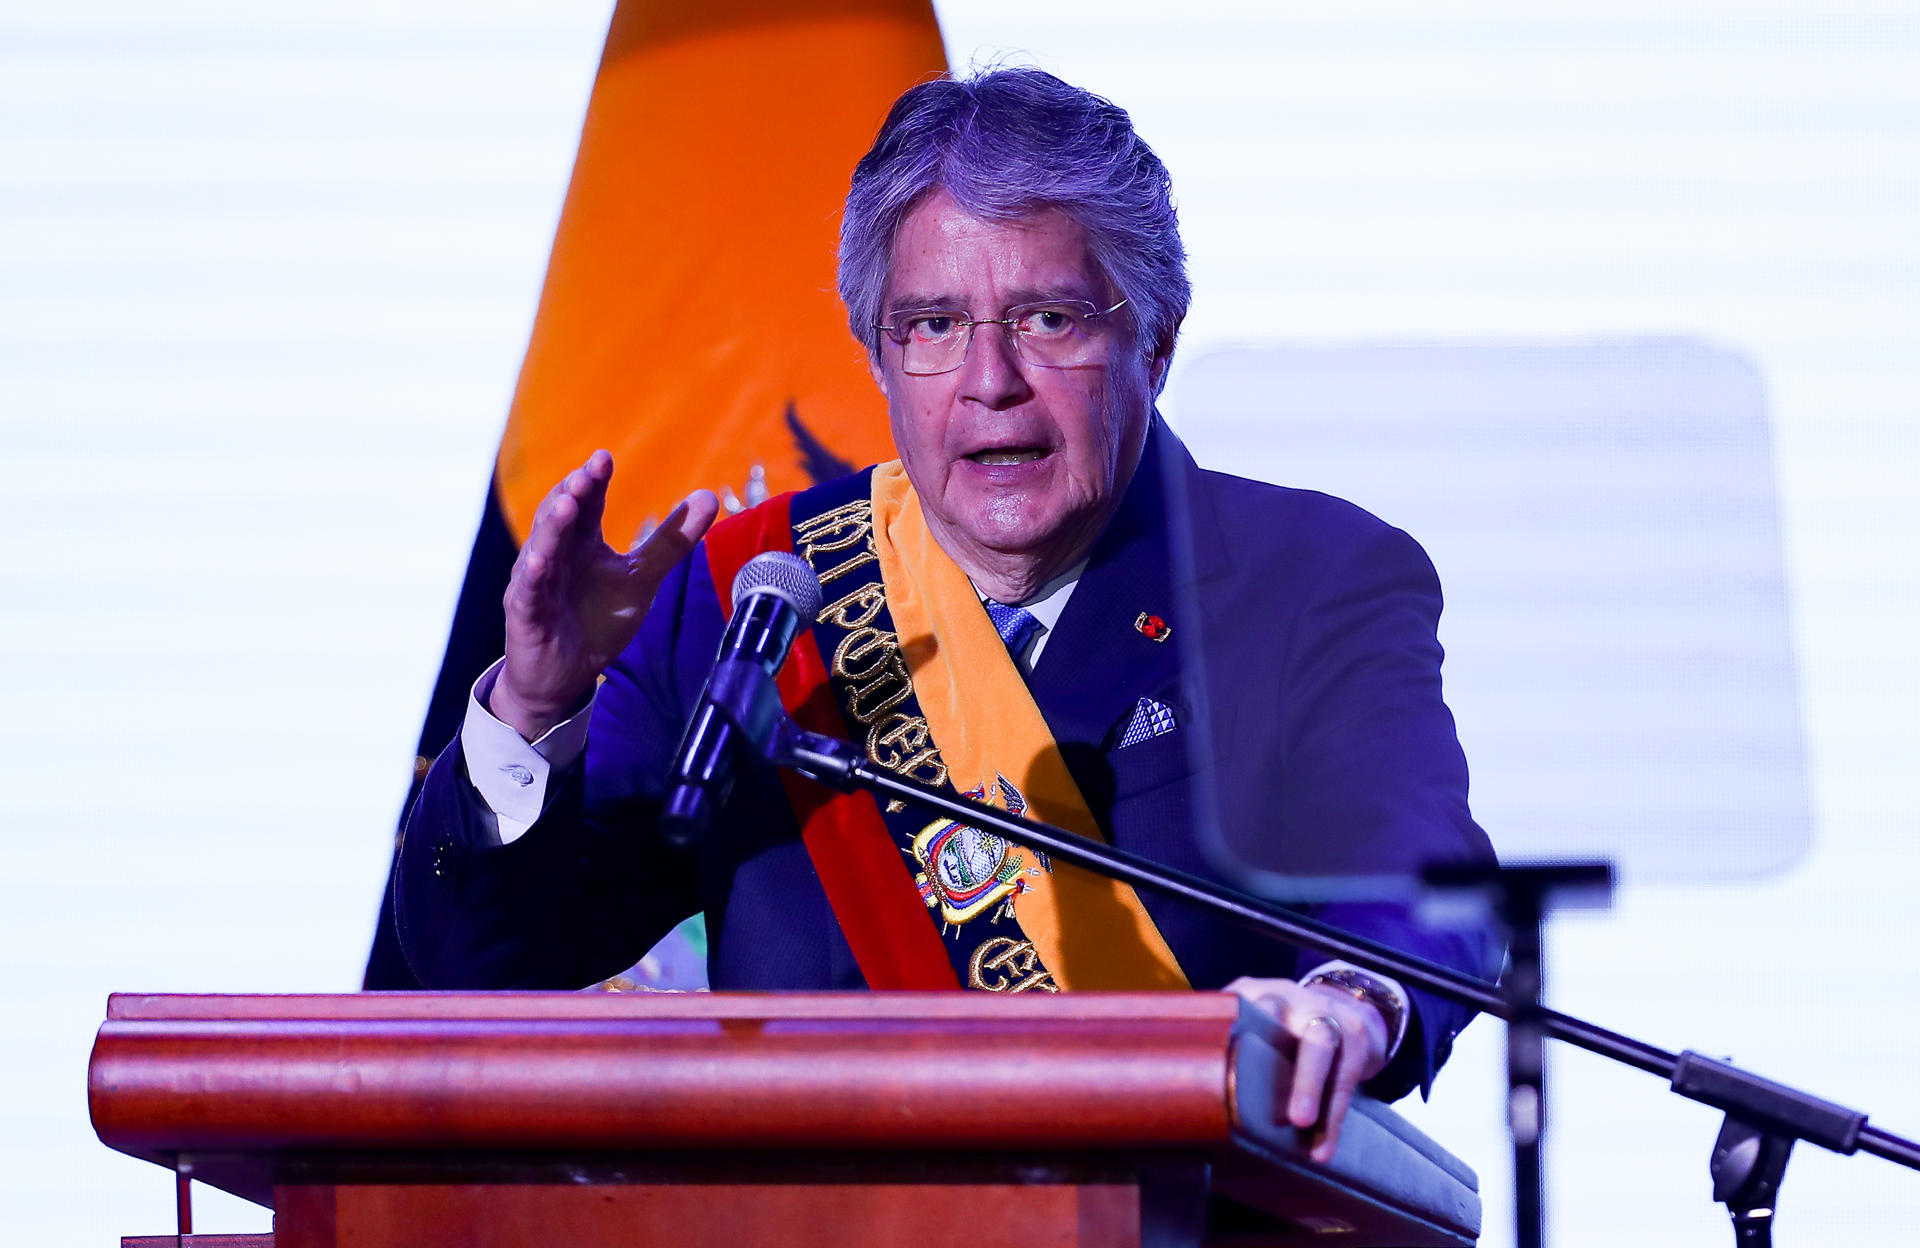 Lasso asegura que con la “muerte cruzada” cerró un capítulo de “abuso de poder” en Ecuador